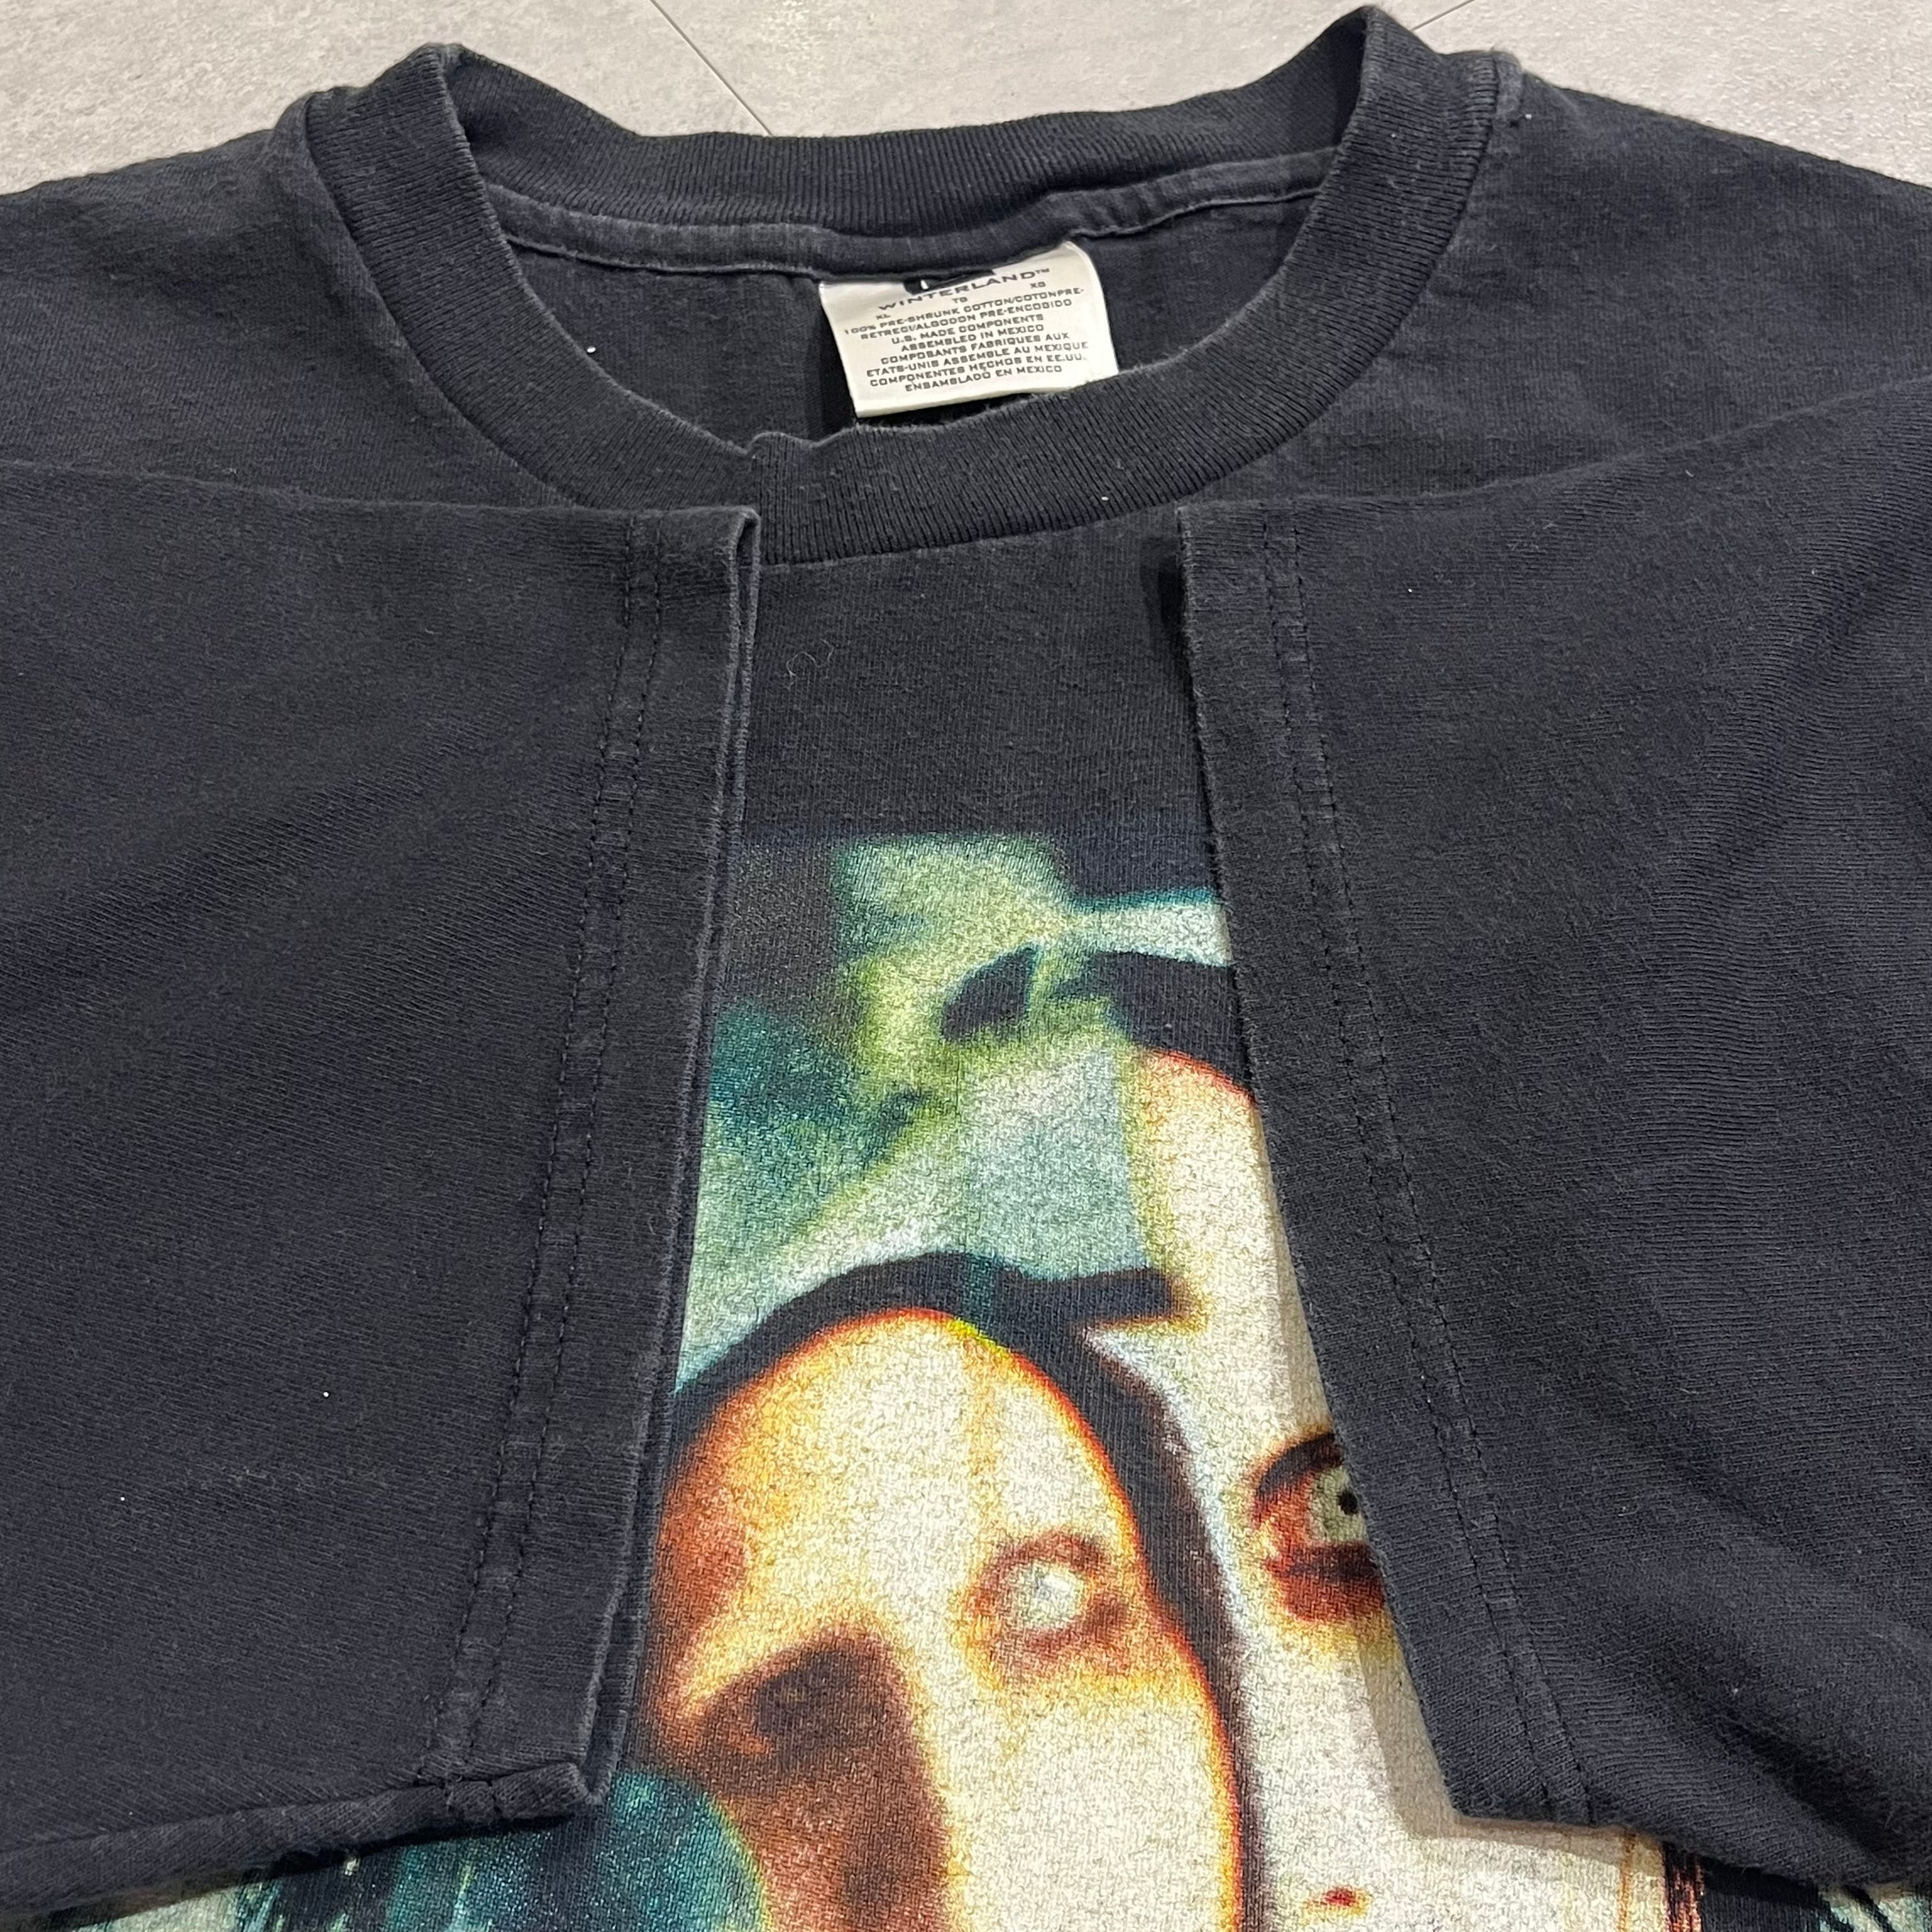 逸品90's◎ Marilyn Manson 両面プリントTシャツ XL